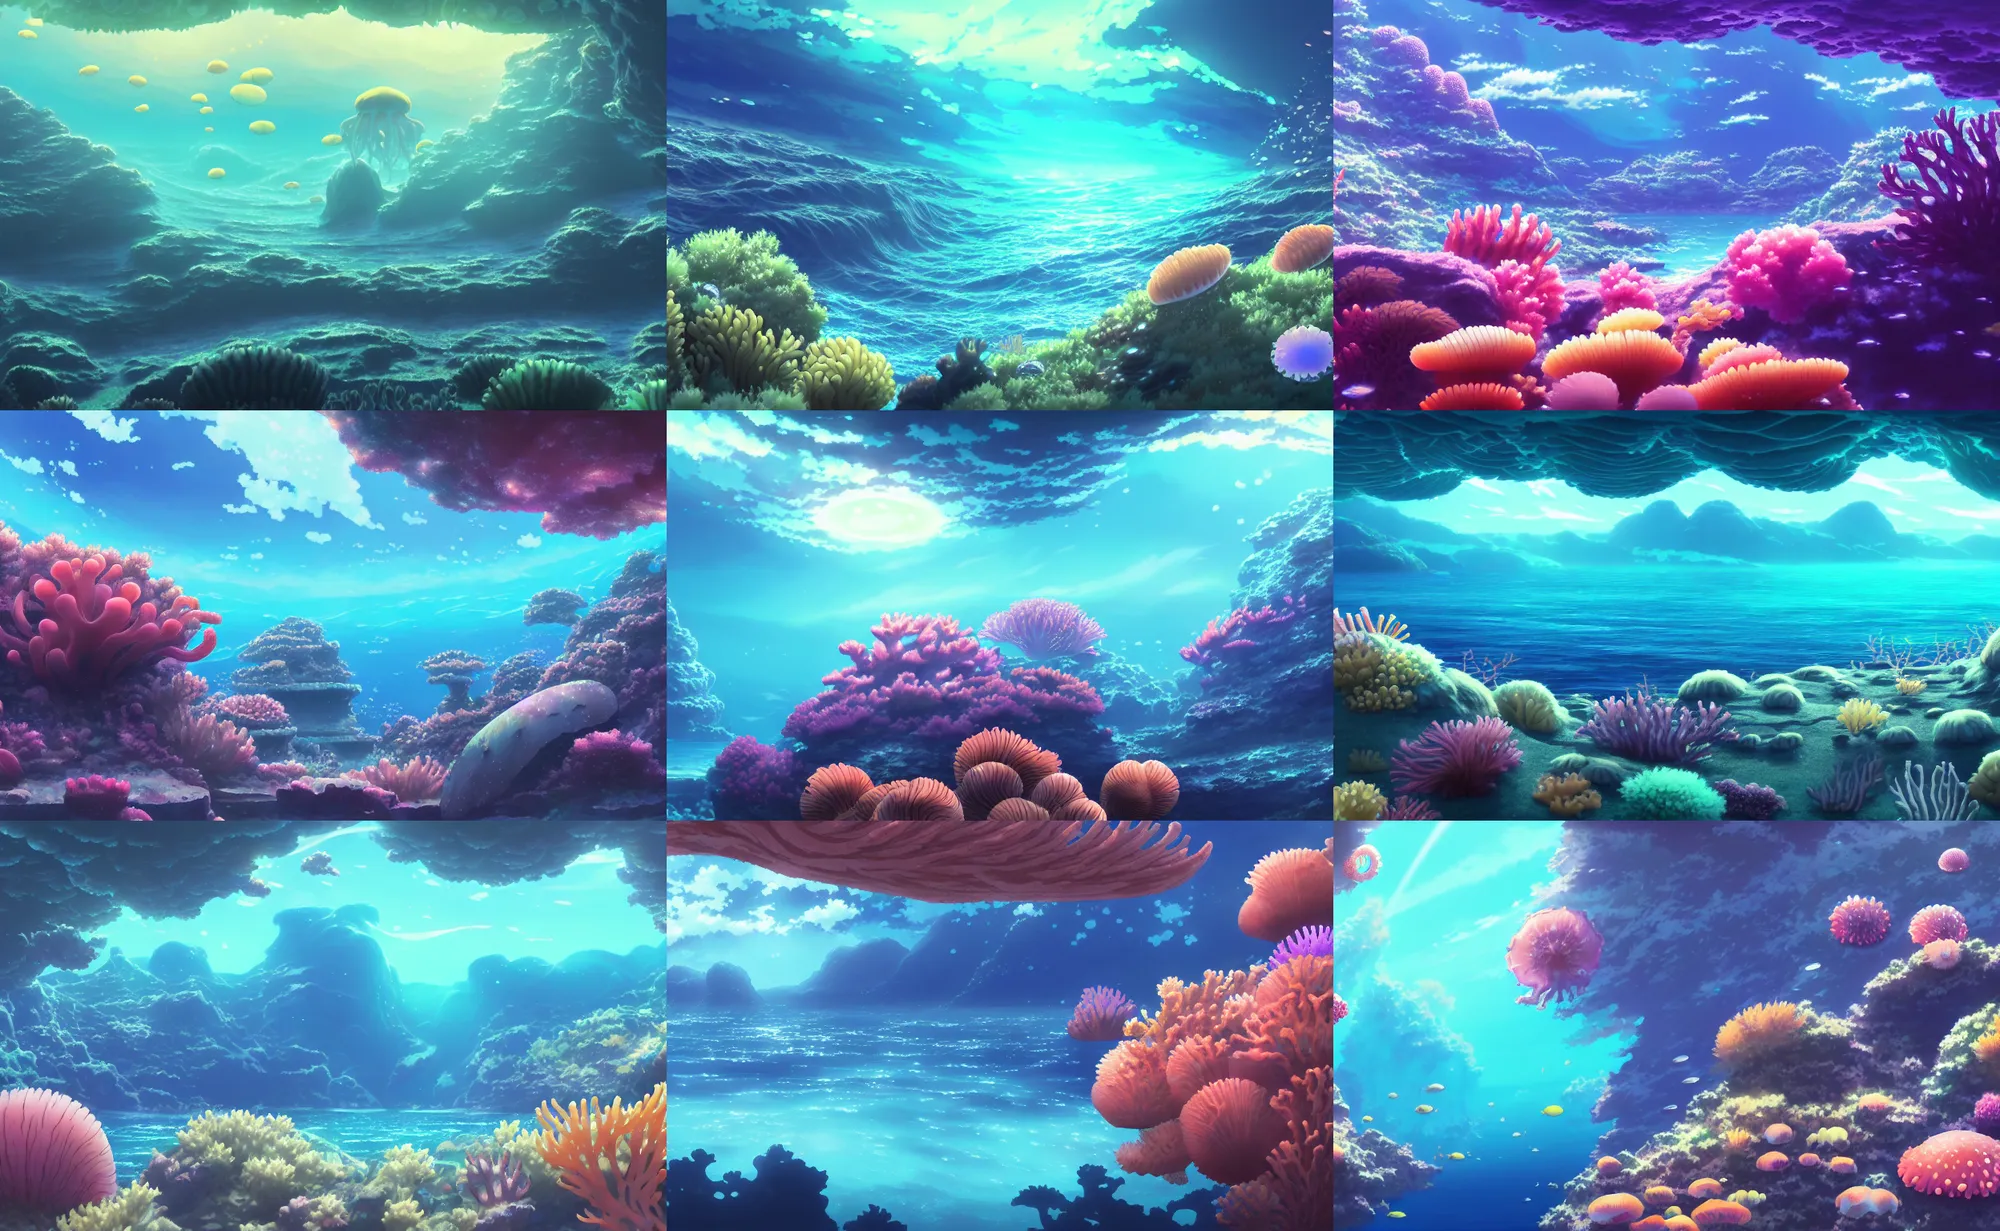 ArtStation - 303 Anime Underwater World | Artworks